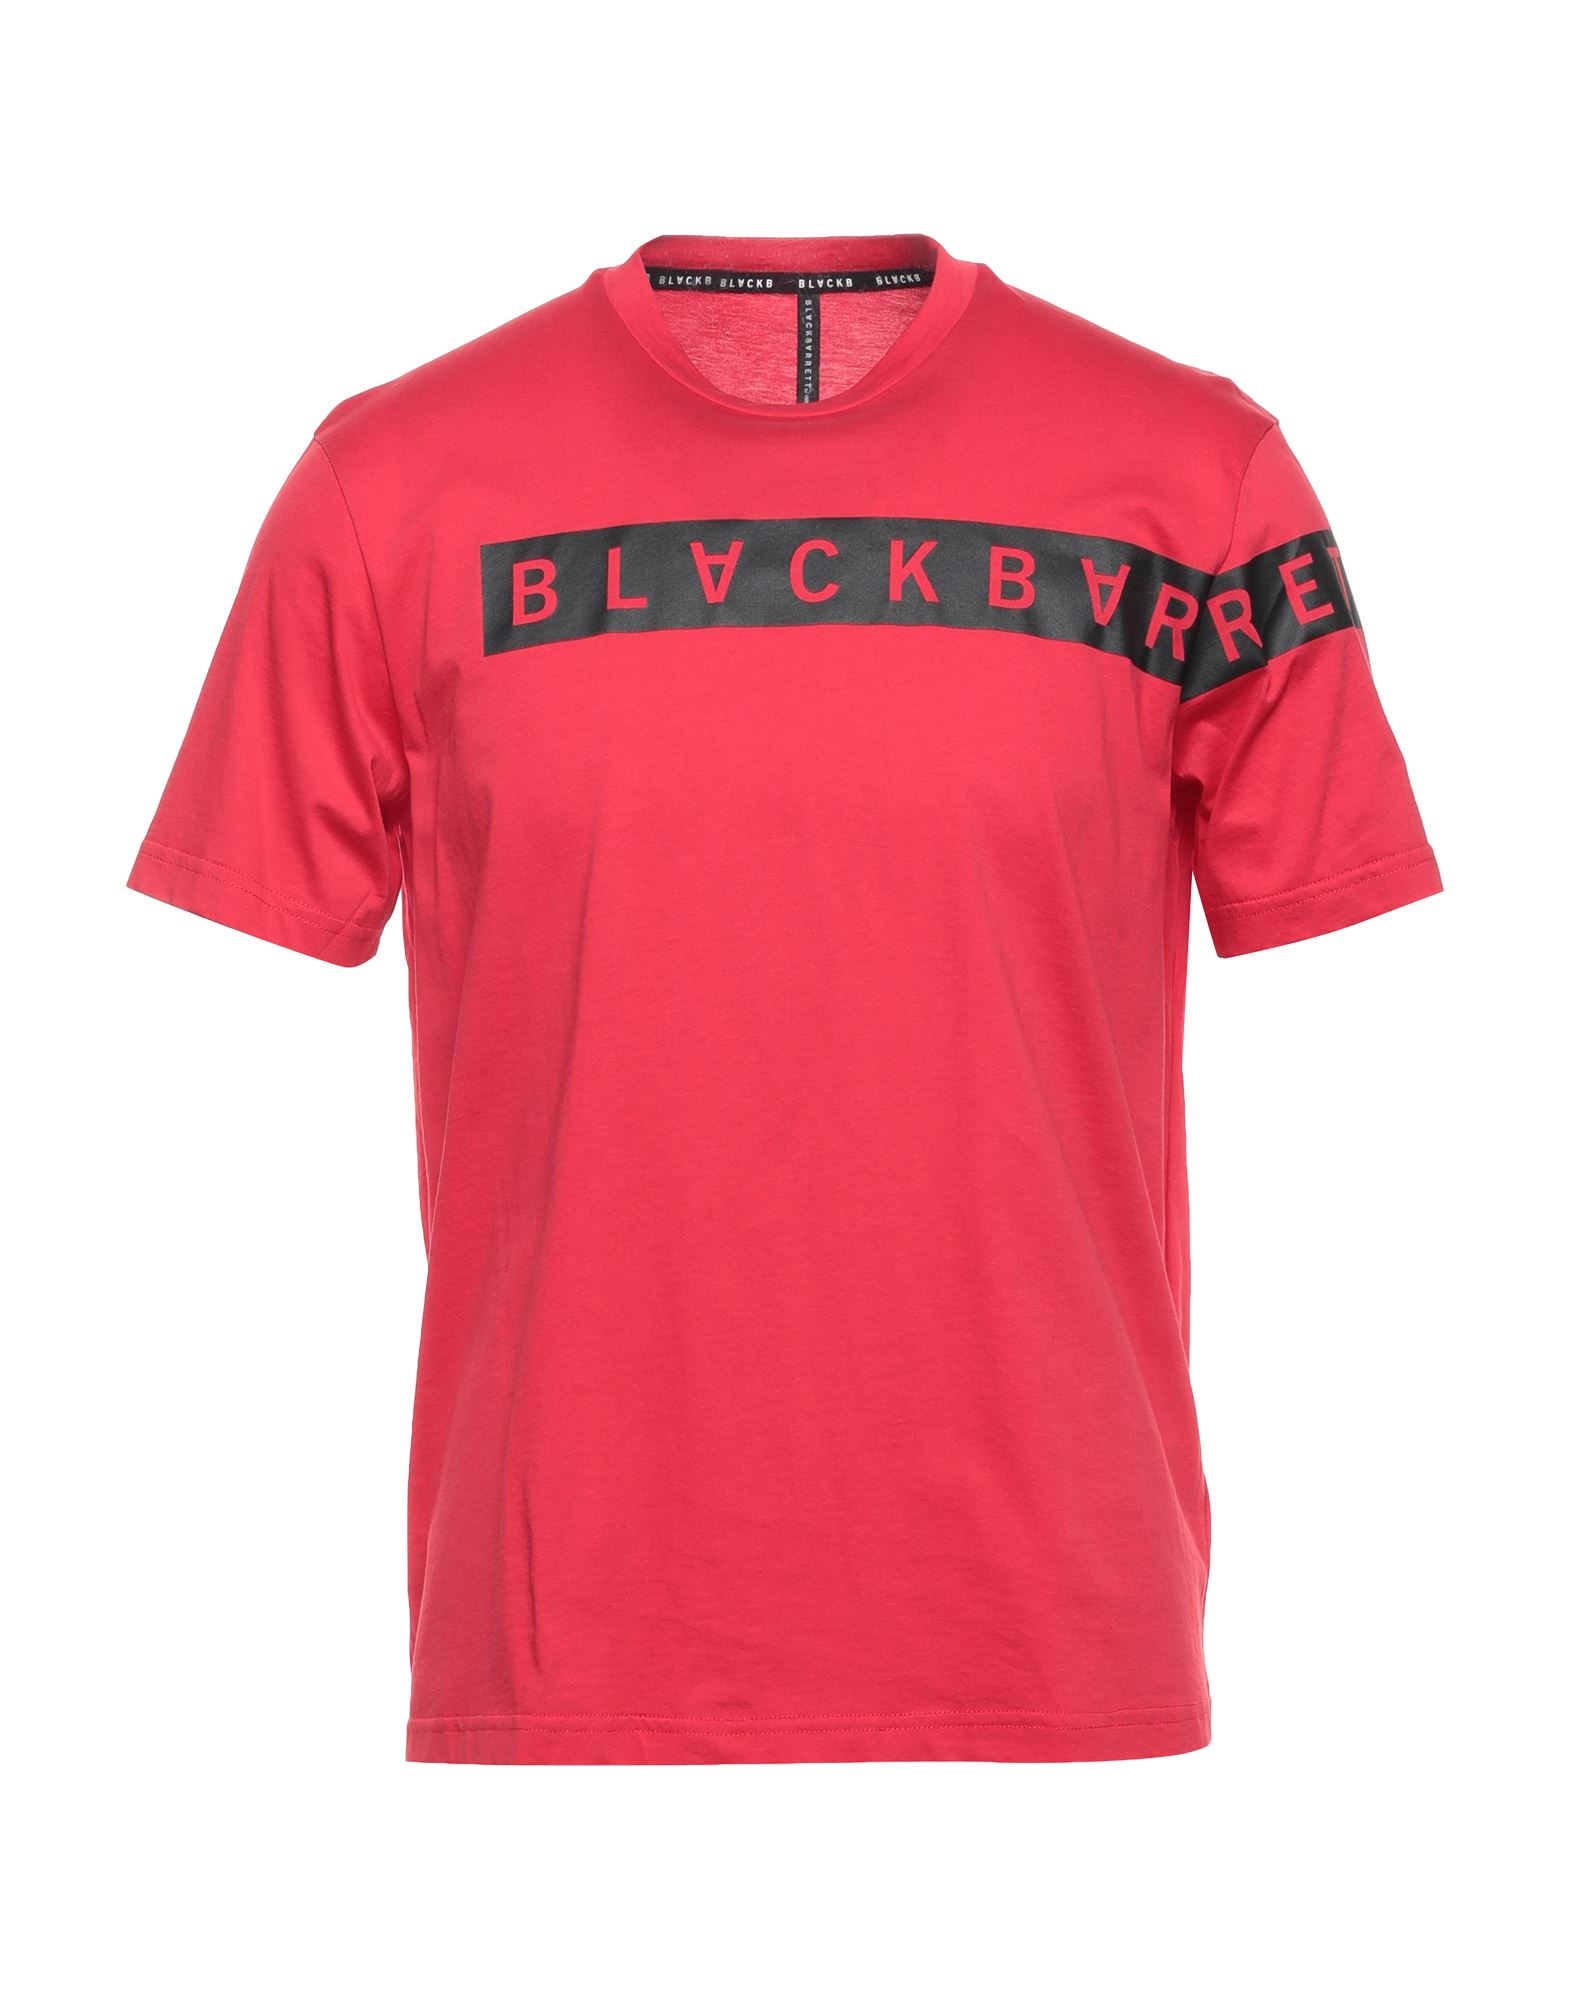 BLACK BARRETT T-shirts